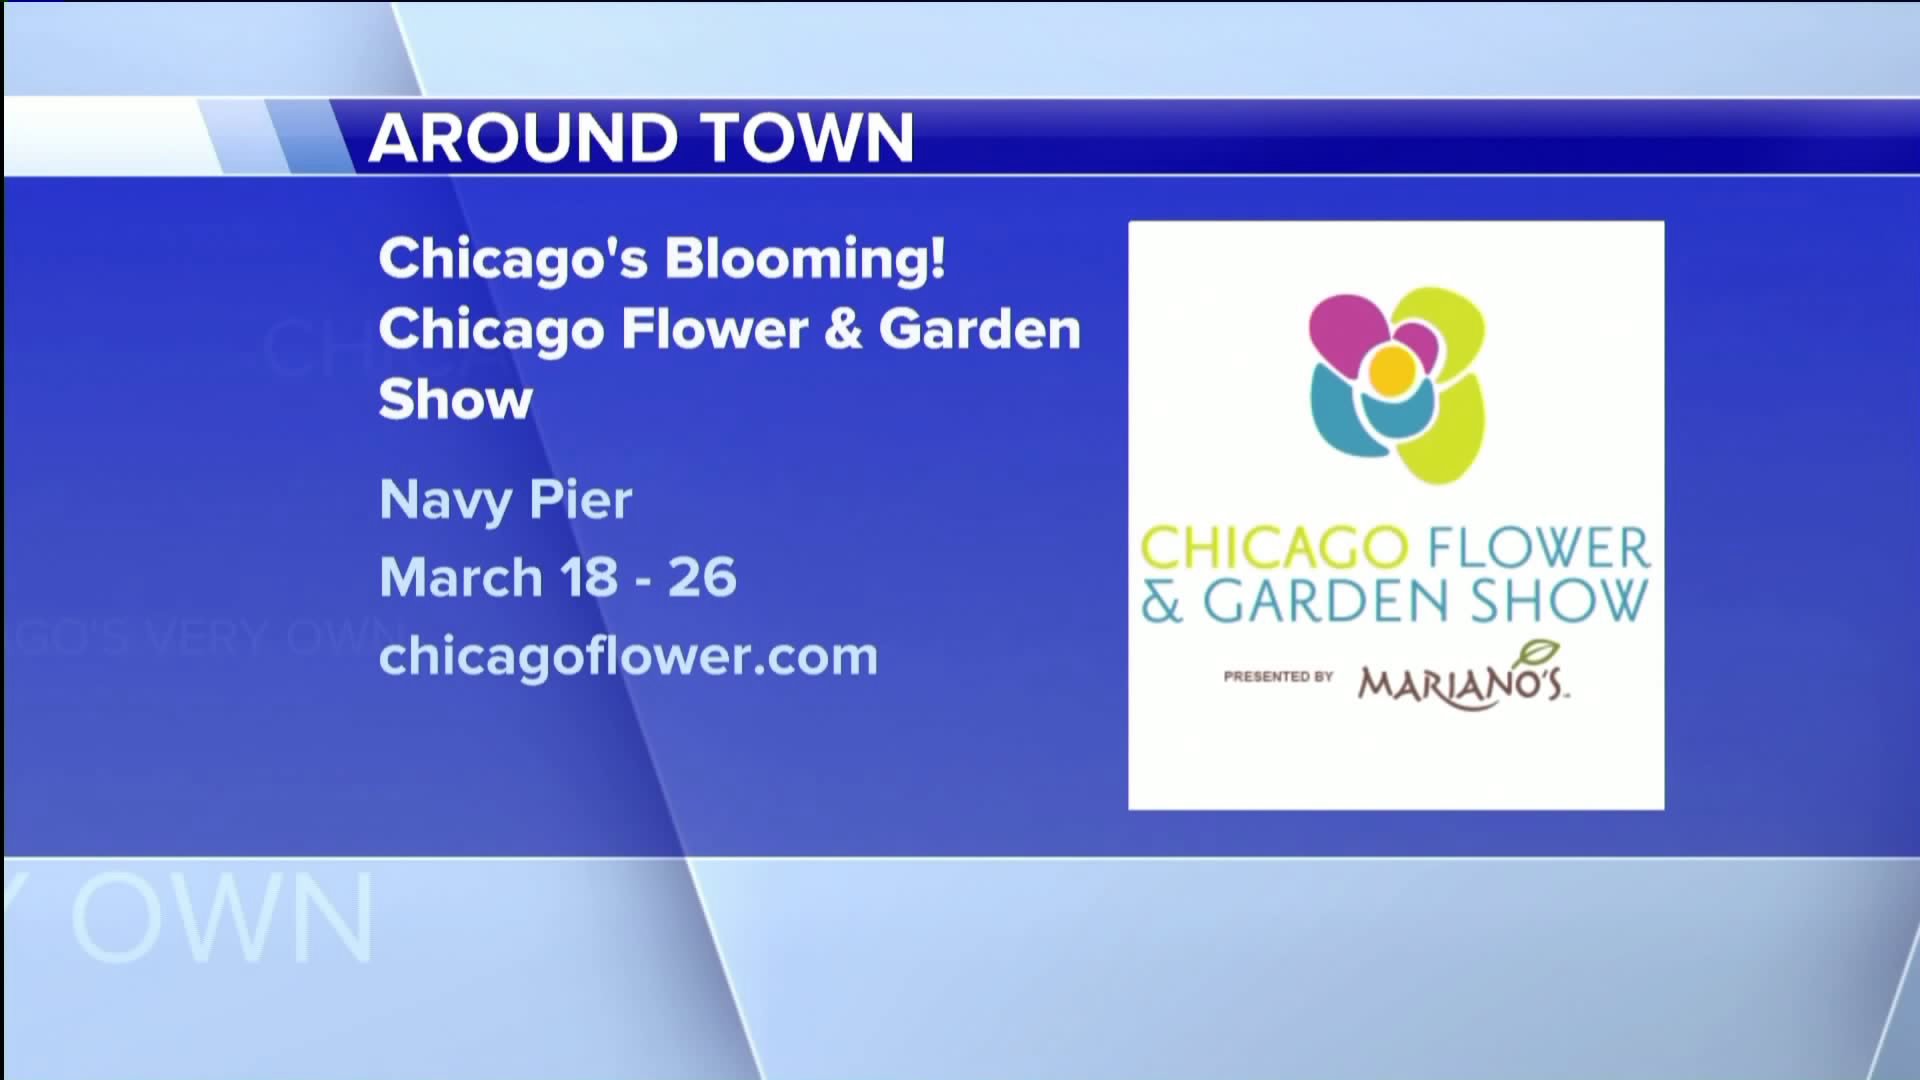 AROUND TOWN: CHICAGO FLOWER AND GARDEN SHOW